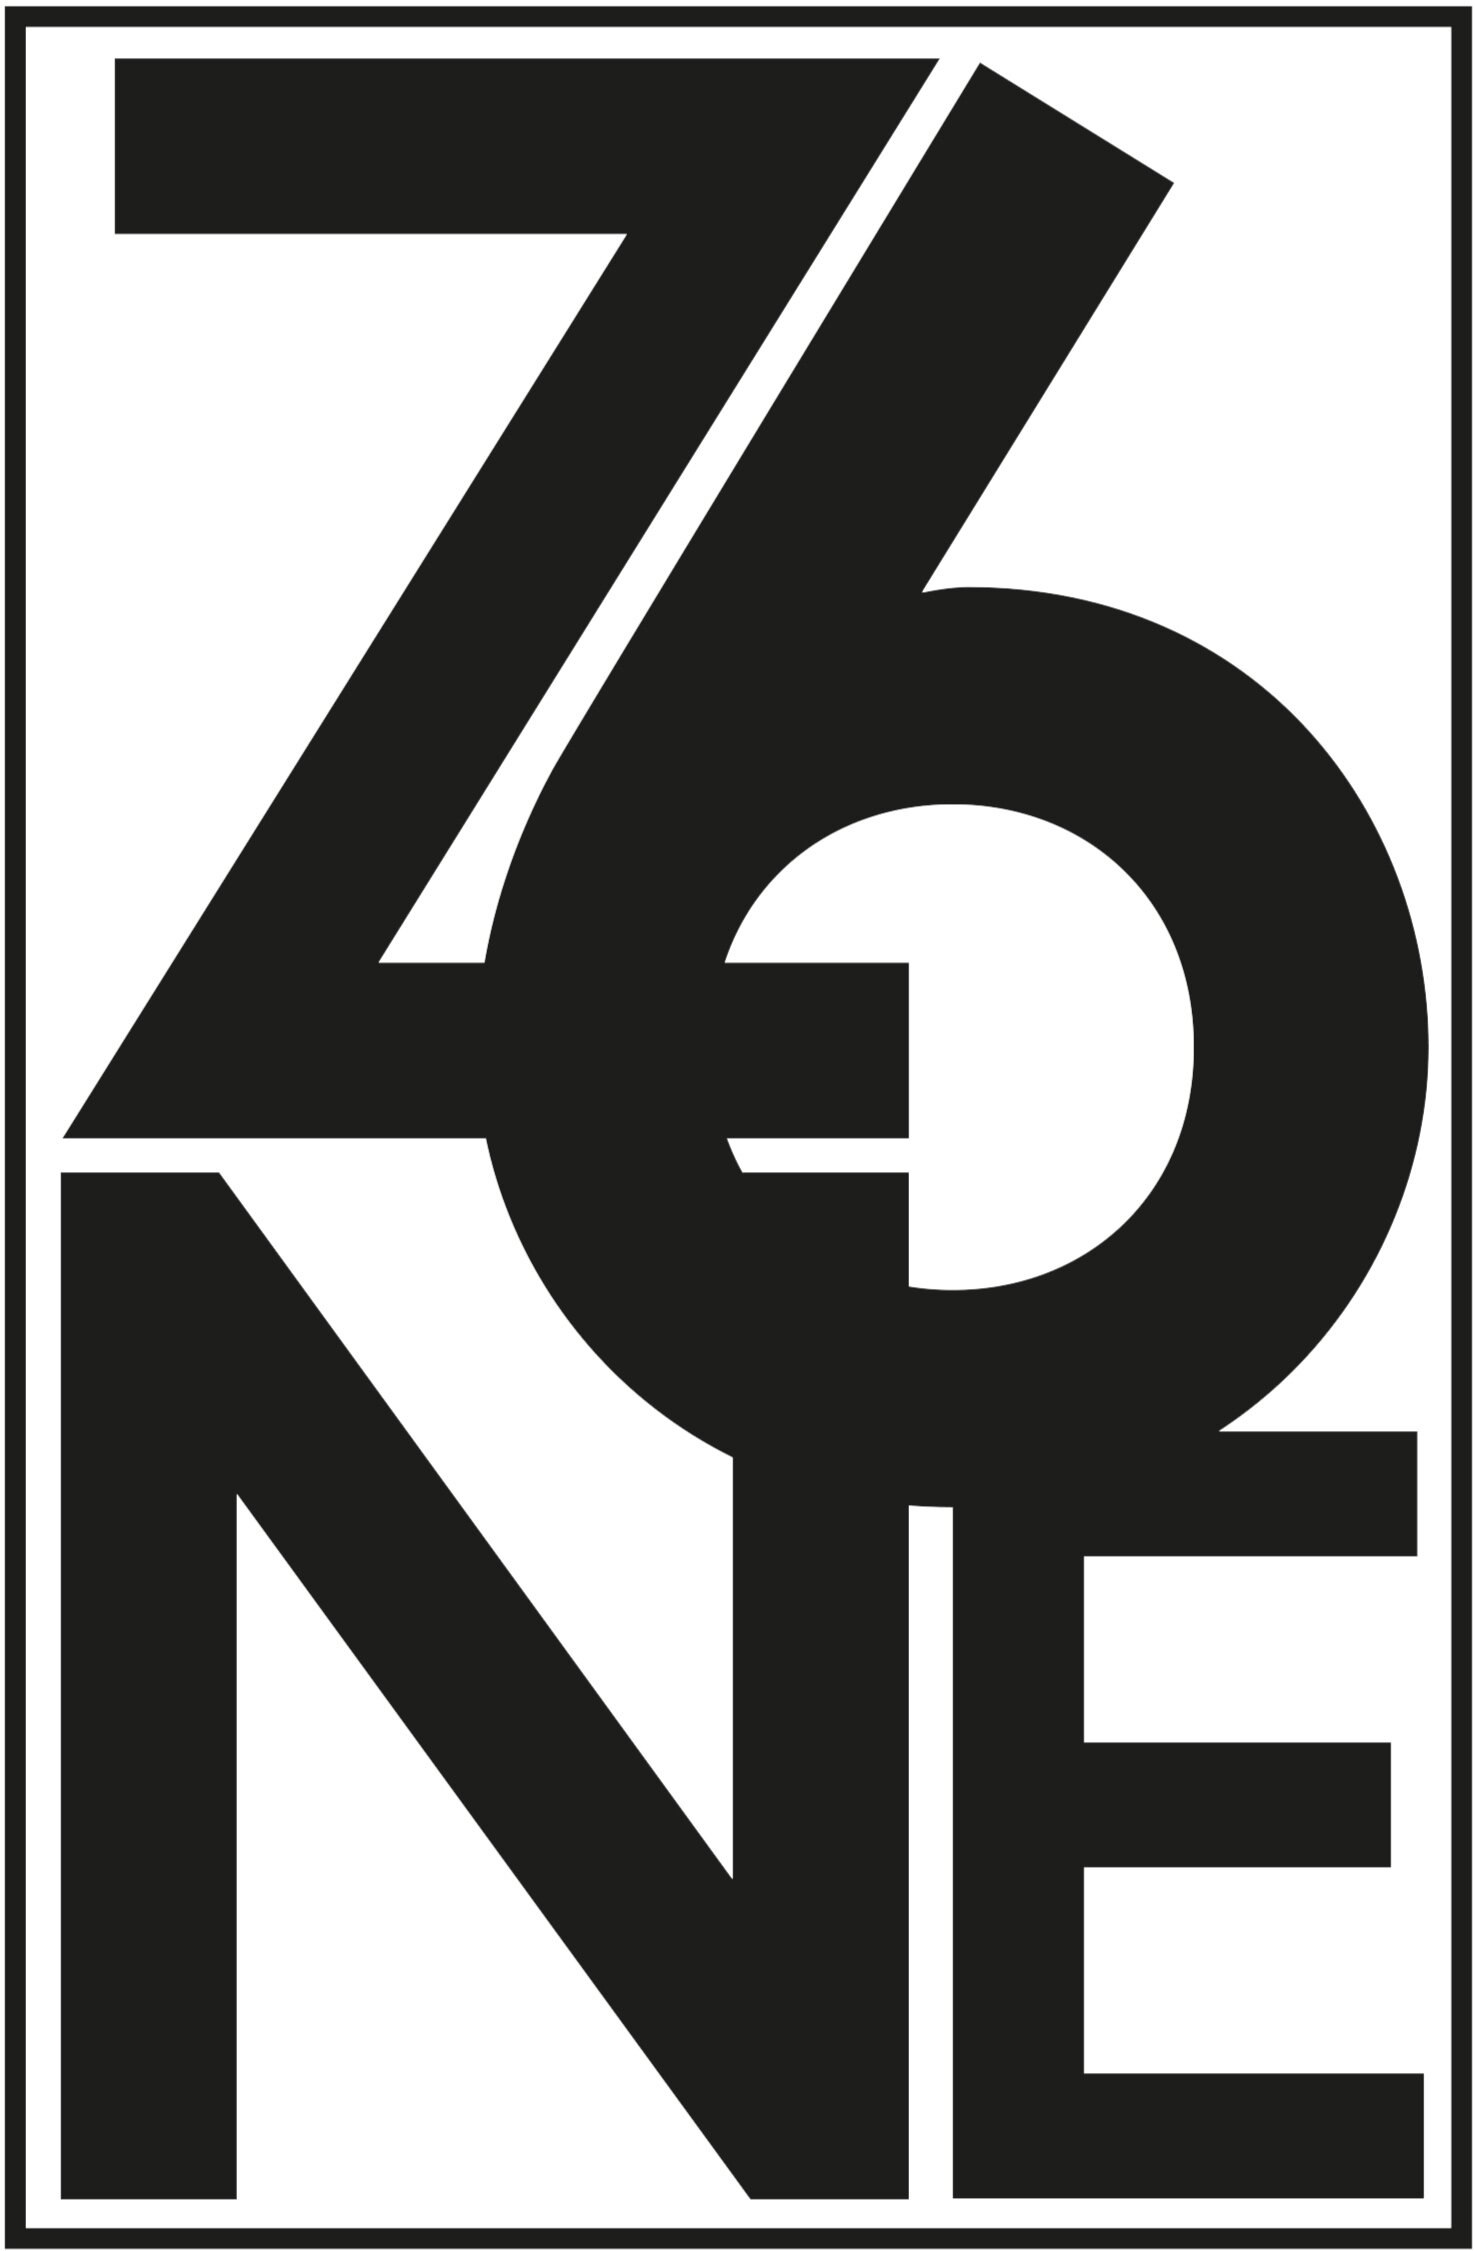 ZONE6